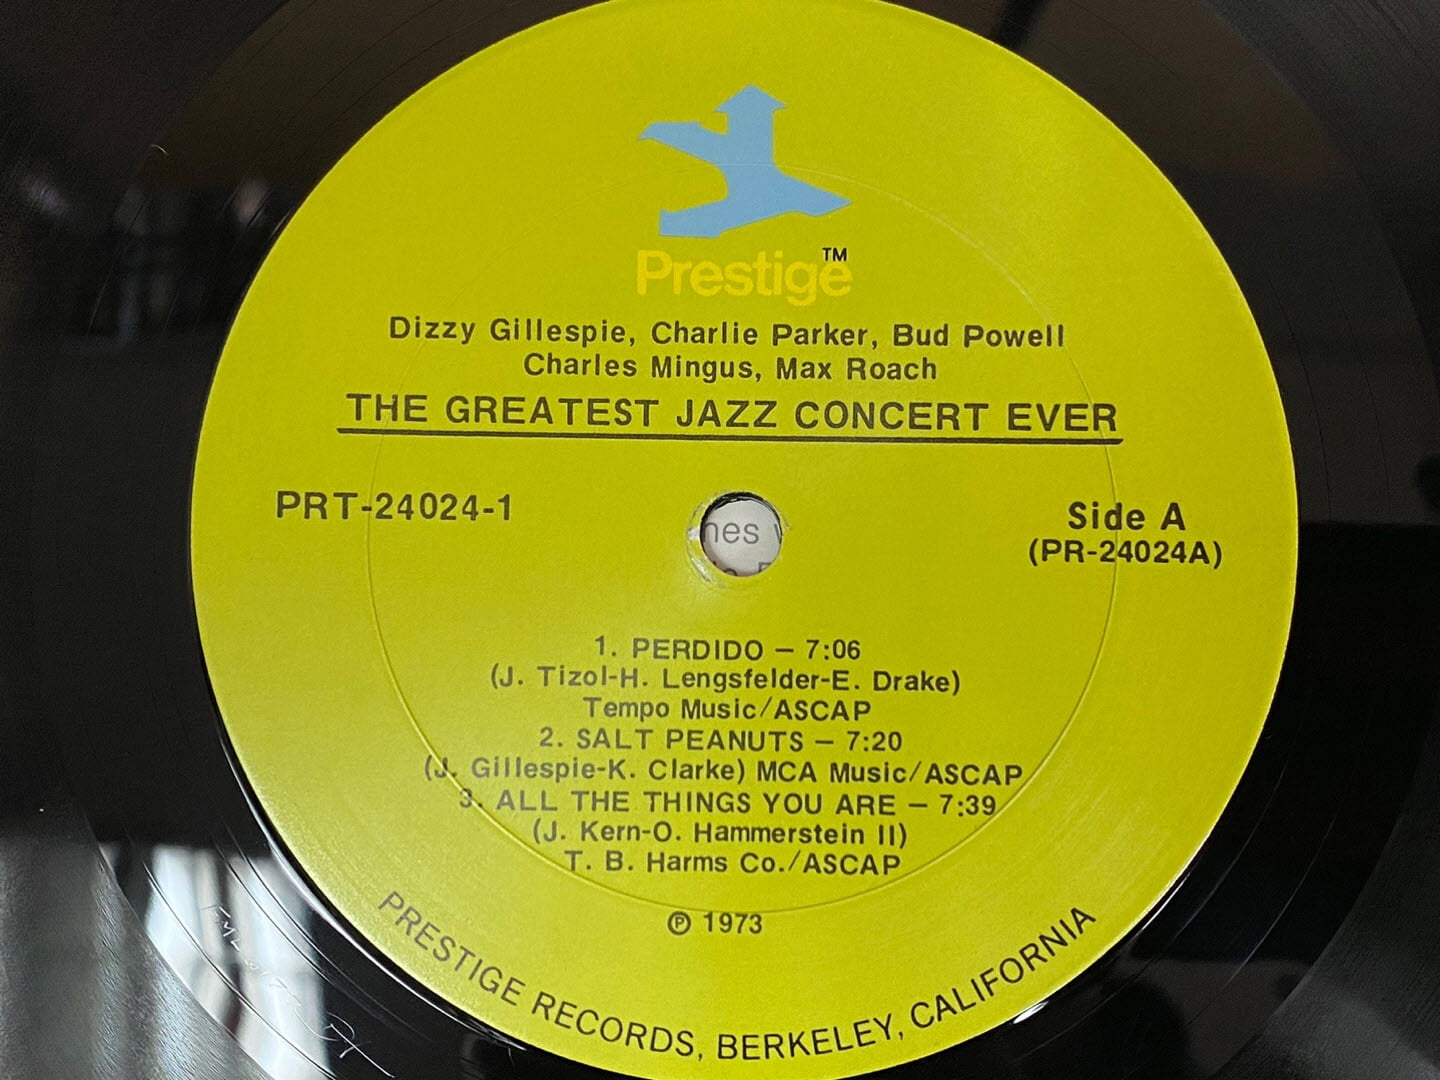 [LP] 찰리 파커(V.A) - Charlie Parker(V.A) - The Greatest Jazz Concert Ever 2Lps [U.S반]